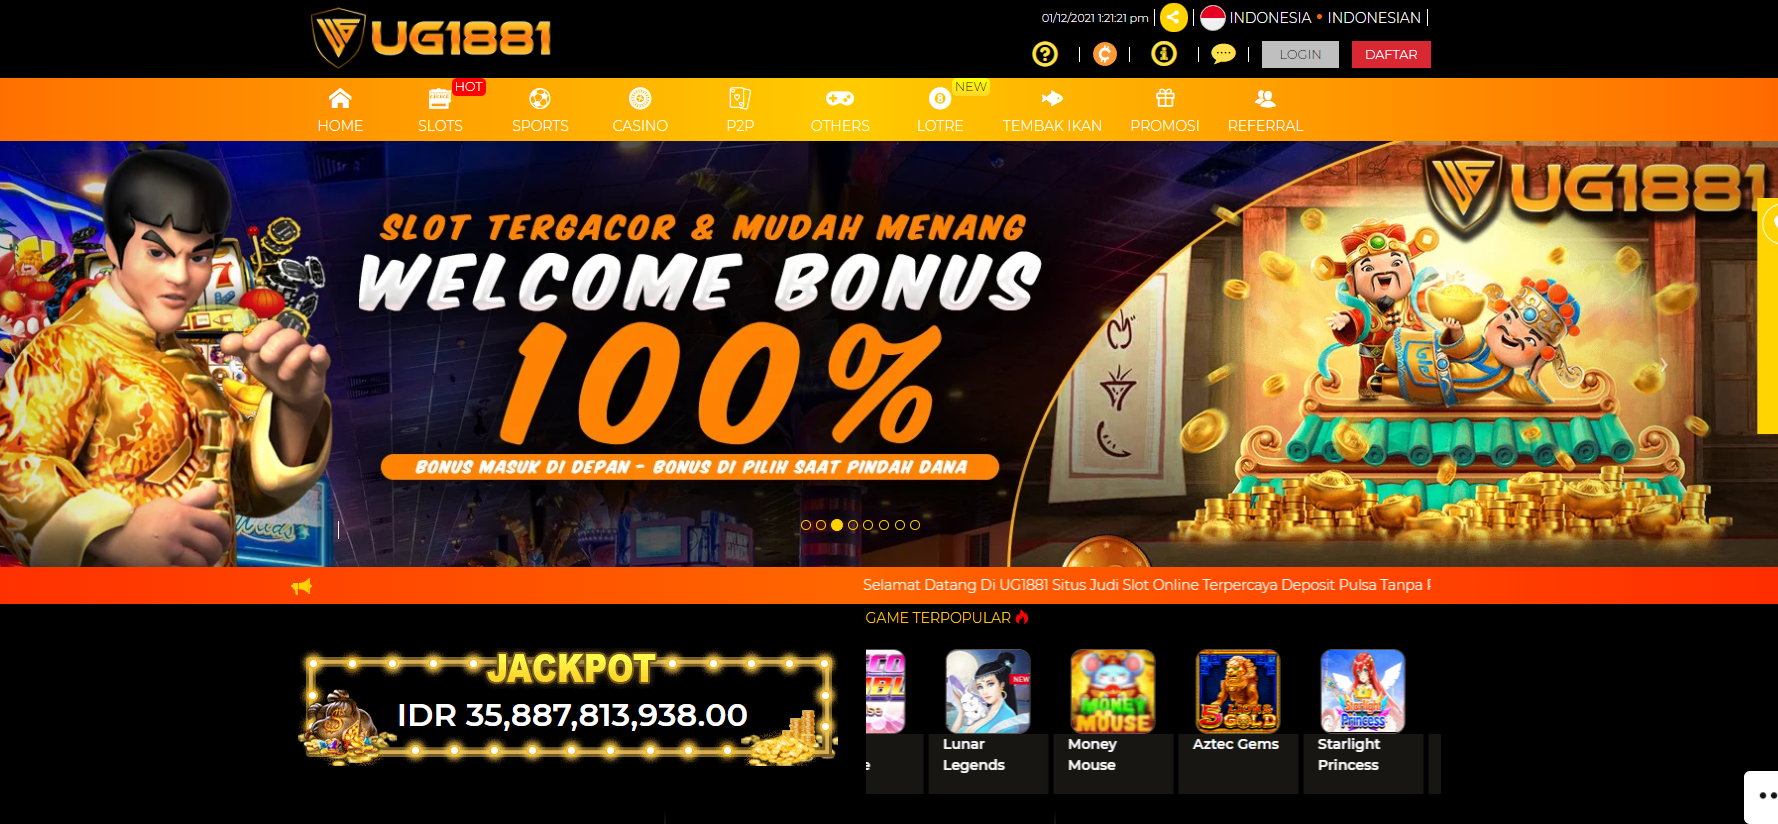 UG1881 Situs Slot Online Joker123 Deposit Pulsa Tanpa Potongan